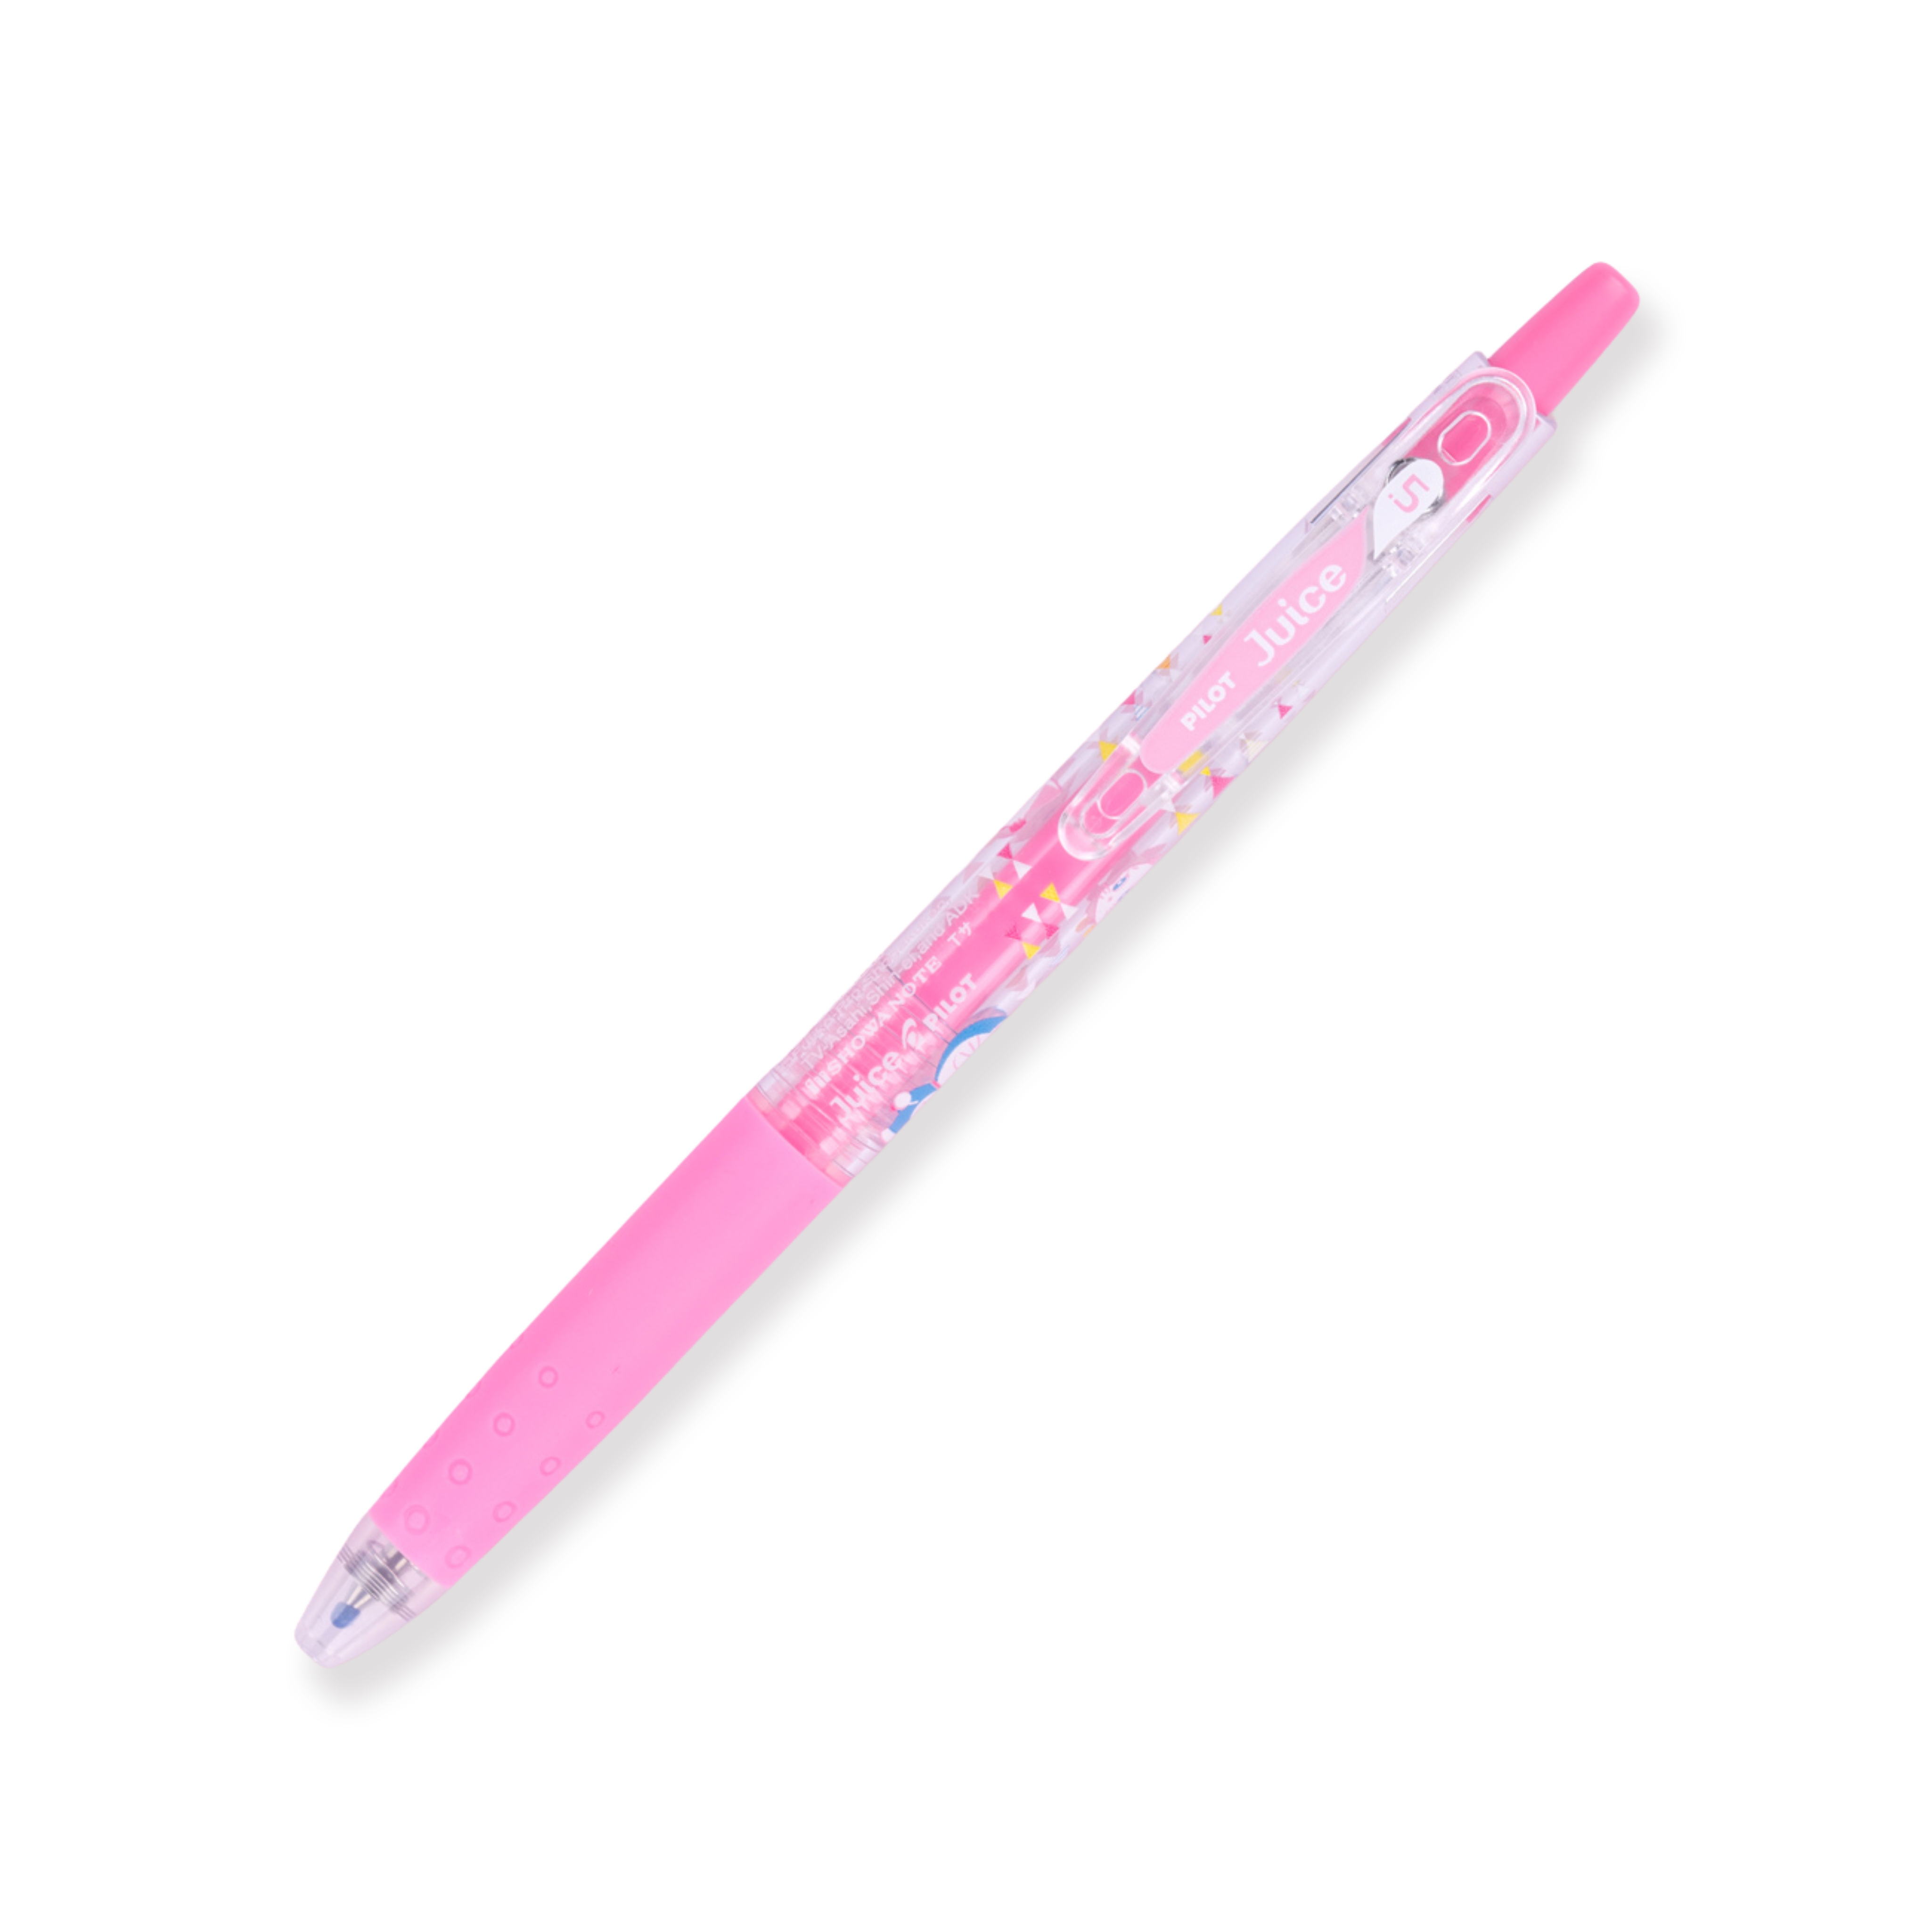 Bolígrafo de gel Pilot Juice de 0,5 mm - Doraemon Pink Set 